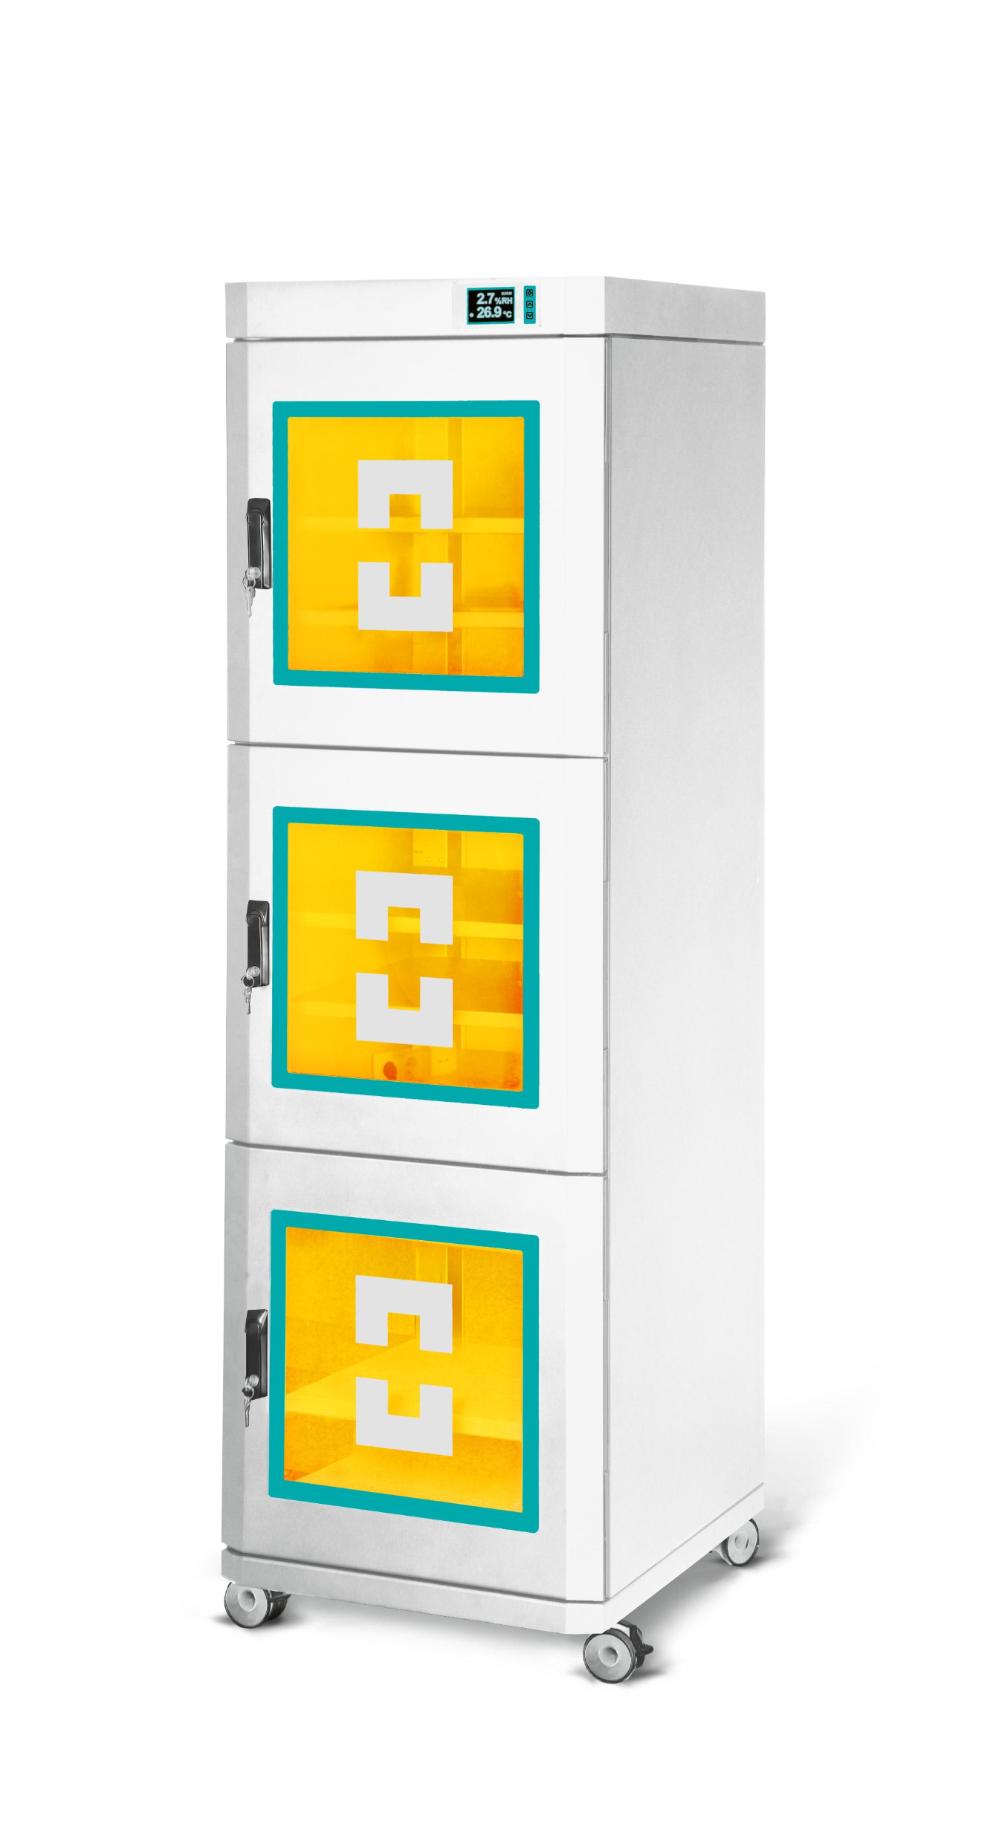 Шкаф сухого хранения с опцией внутренней индикаторной светодиодной подсветки - режим выхода в заданные параметры